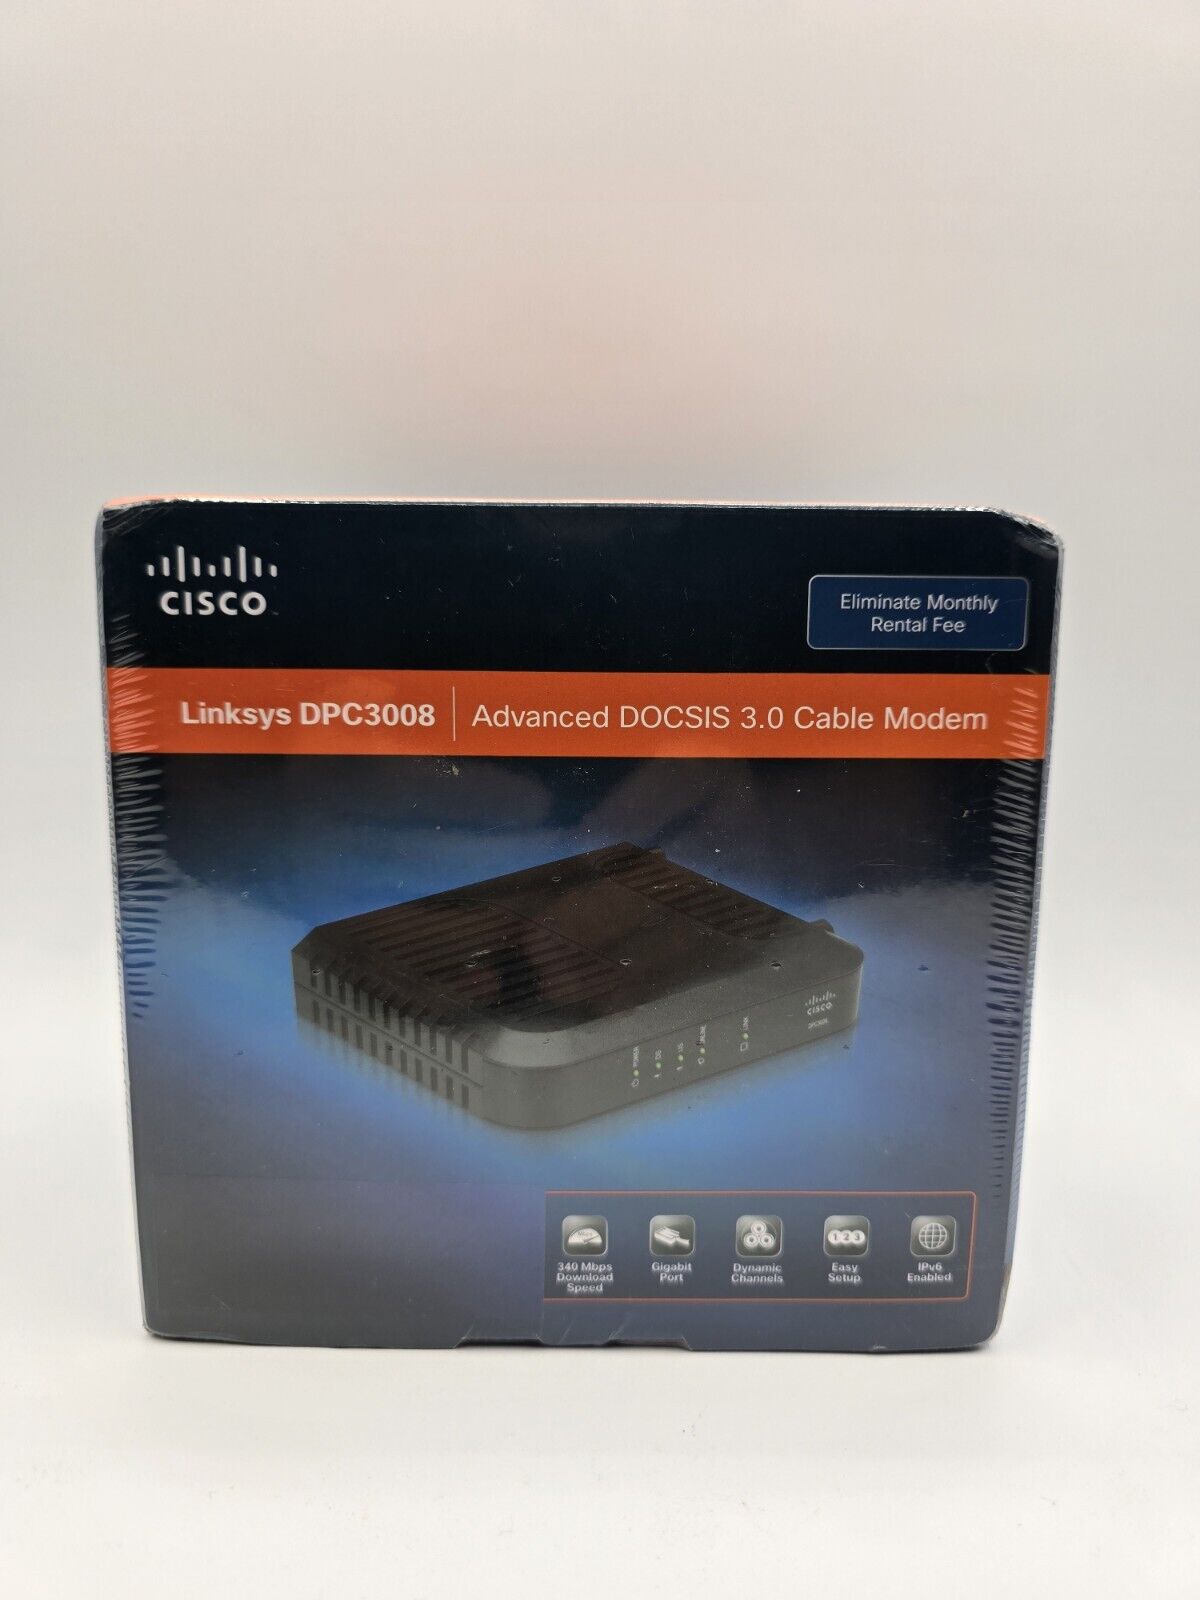 Cisco Linksys DPC3008 DOCSIS 3.0 Cable Modem